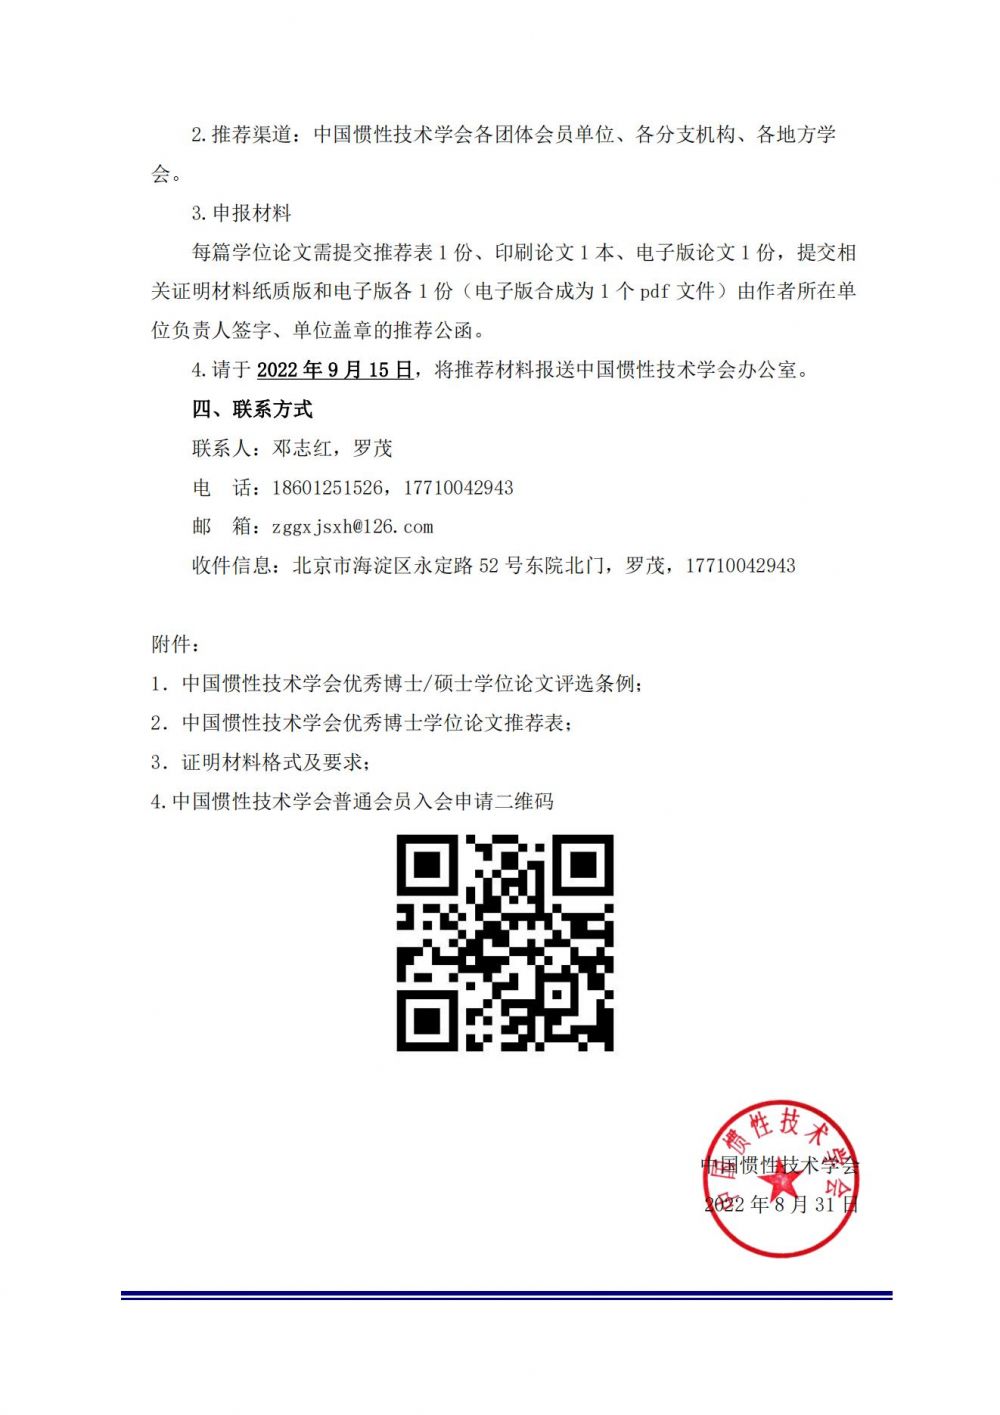 博士-关于推荐参加2022年中国惯性技术学会优秀博士学位论文评选的通知_01.jpg